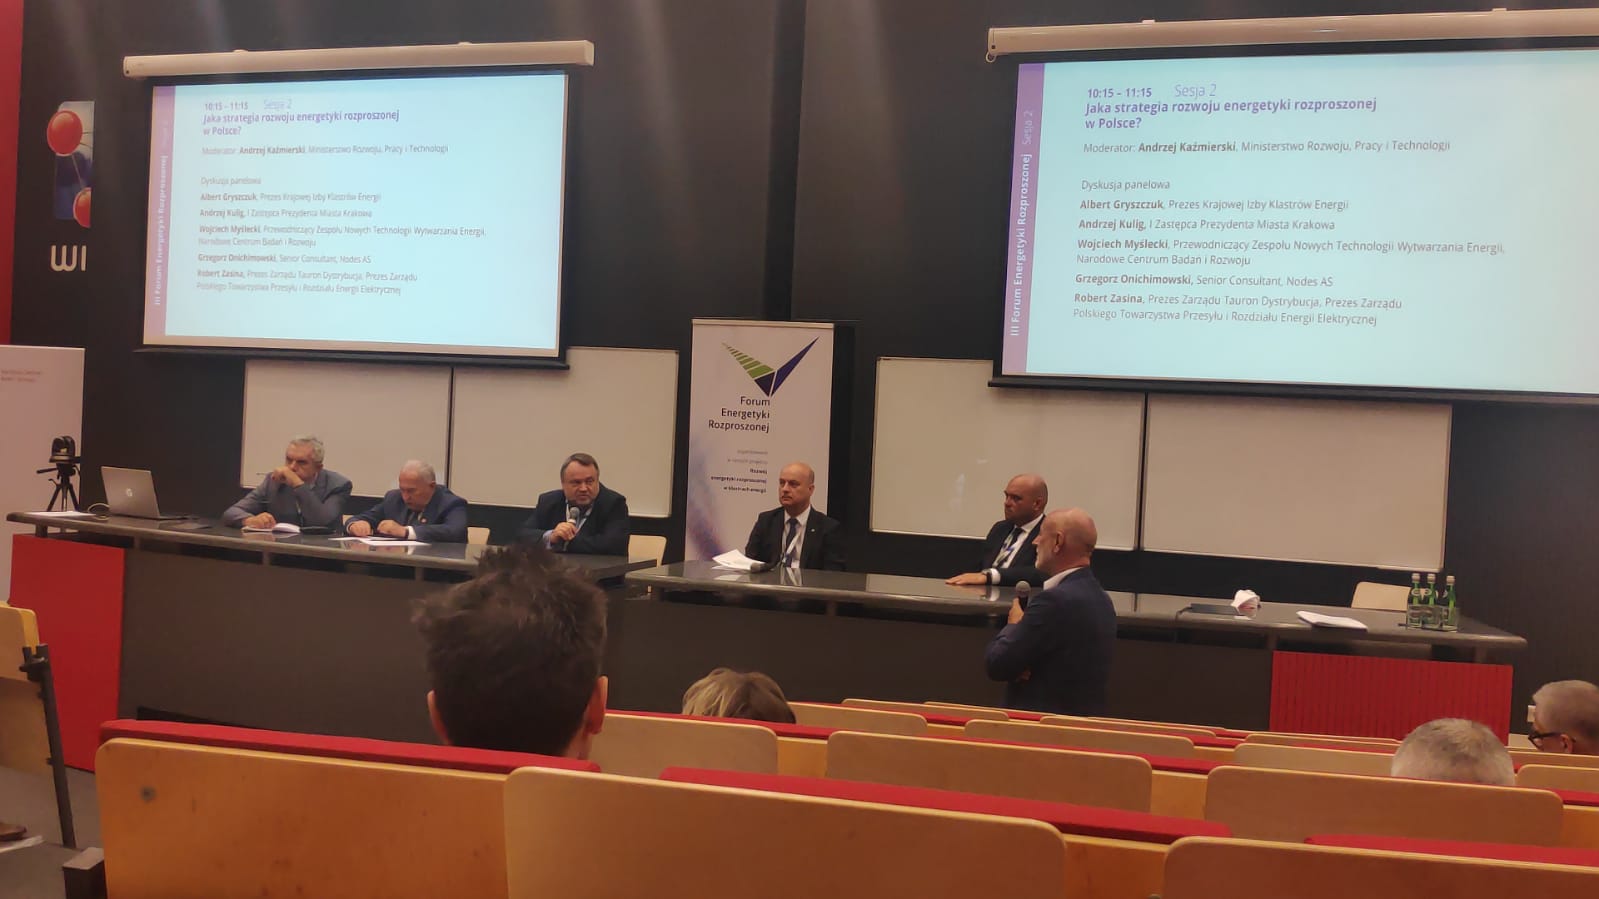 III Forum Energetyki Rozproszonej w Krakowie – zapowiedzi regulacji prawnych